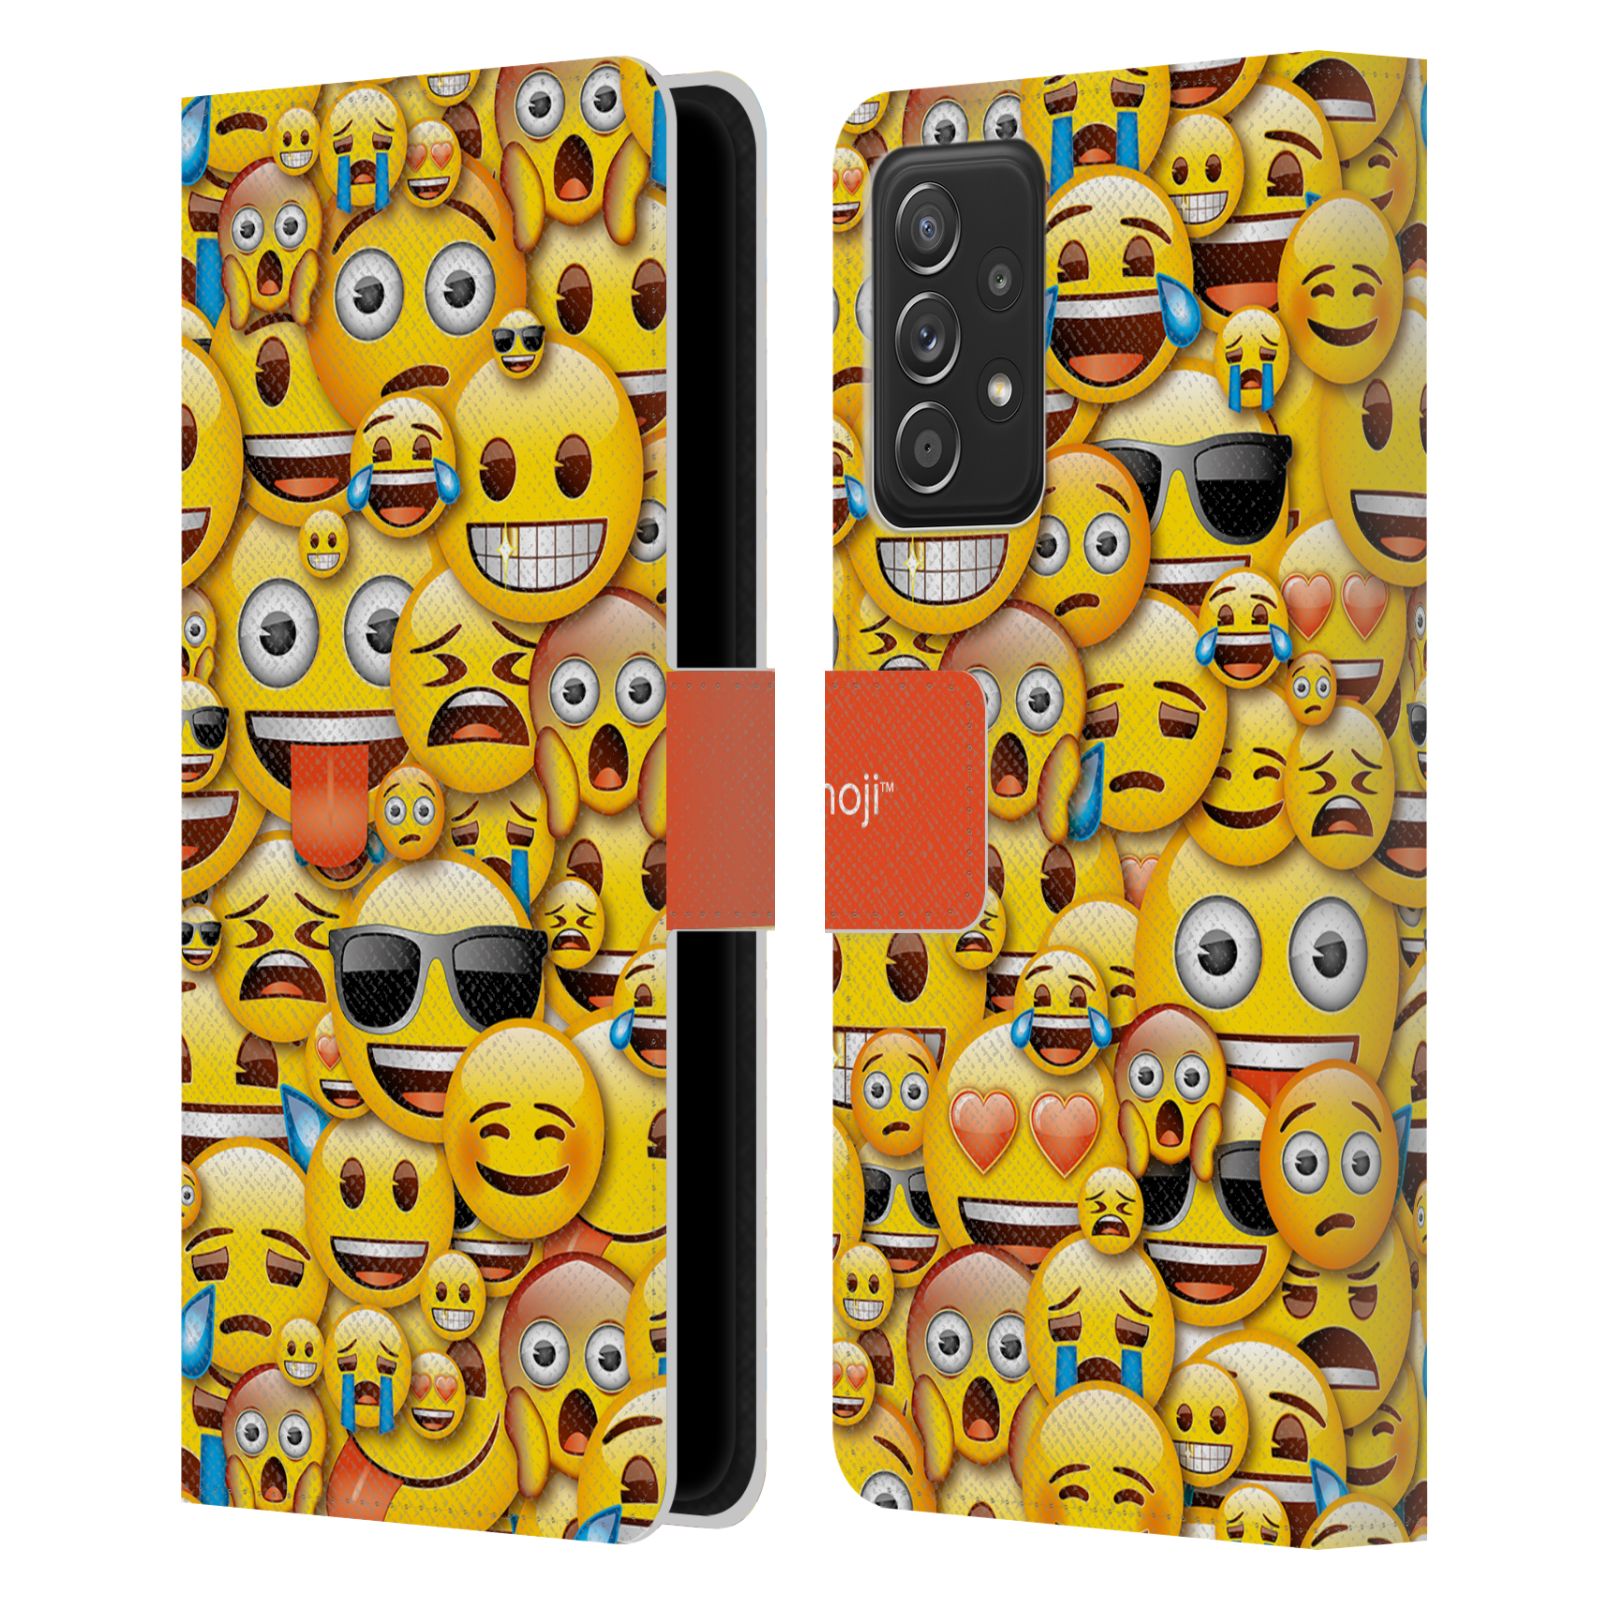 Pouzdro HEAD CASE na mobil Samsung Galaxy A52 / A52 5G / A52s 5G  Emoji hromada smajlíků